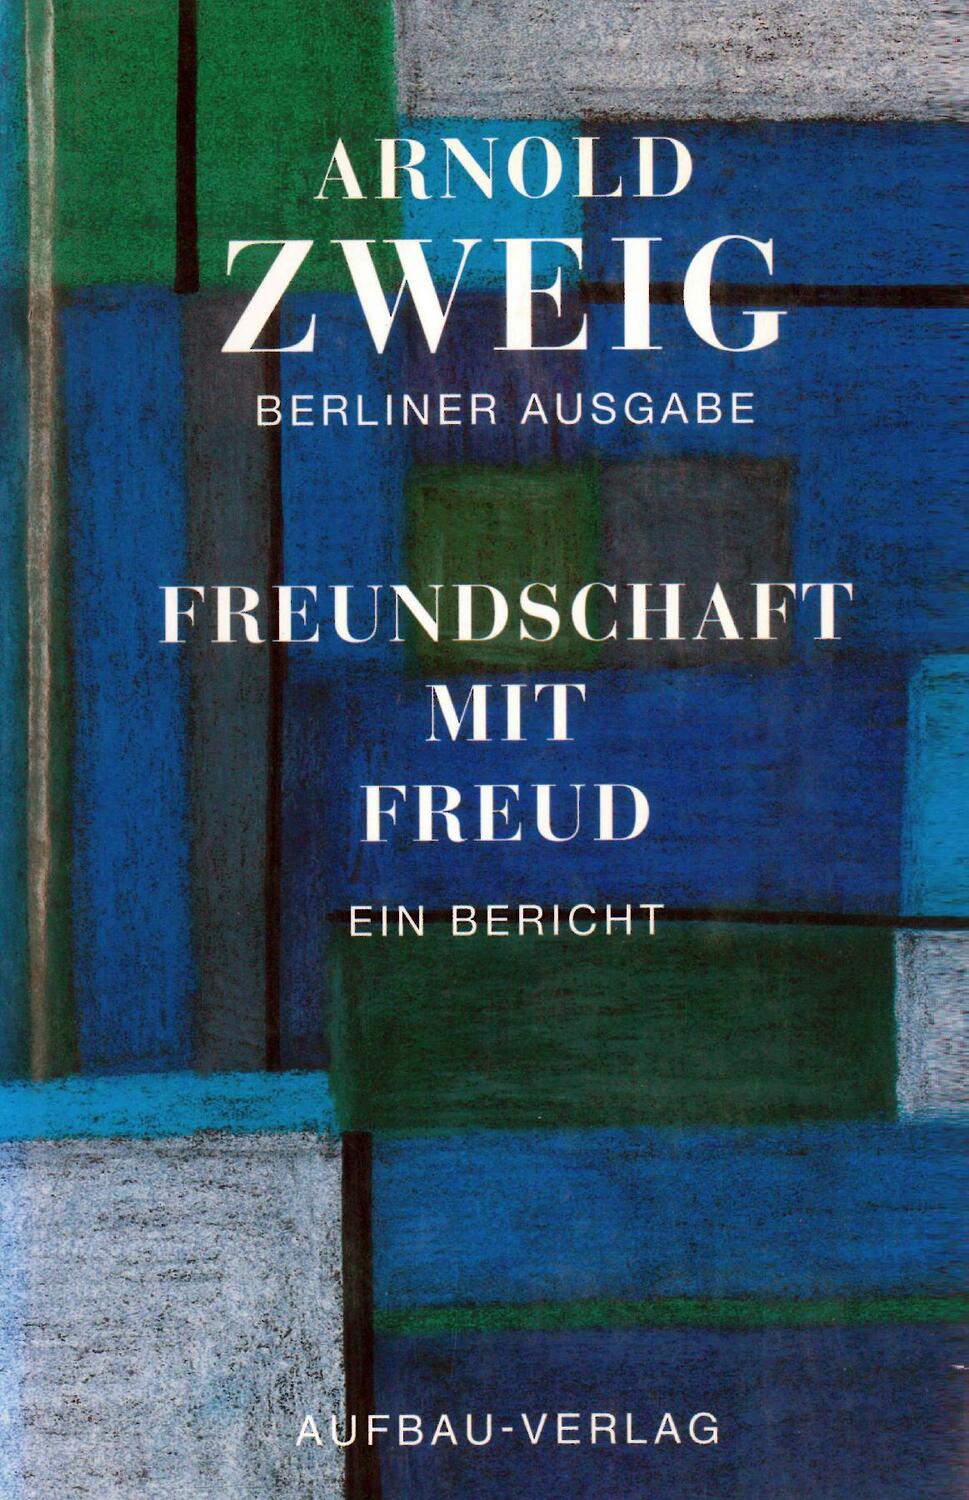 Freundschaft mit Freud - Zweig, Arnold